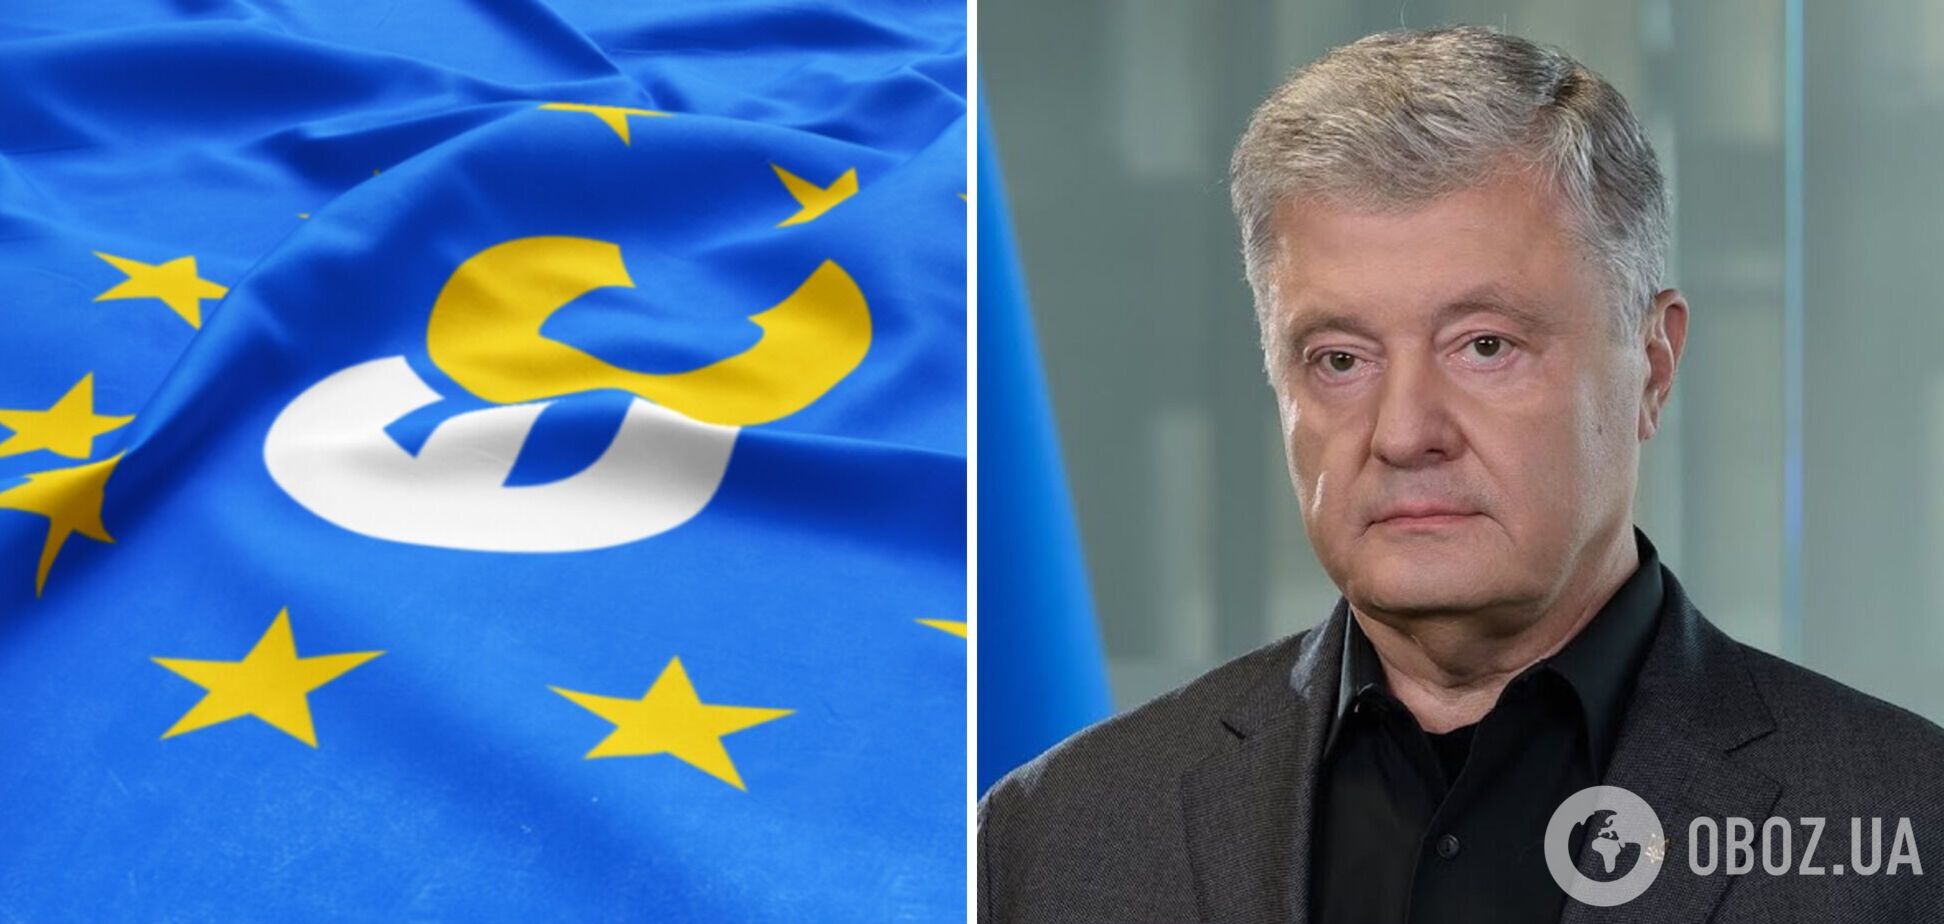  Зрив візиту шкодить не Порошенку, а Україні: в 'ЄС' прокоментували заборону п'ятому президенту виїхати у відрядження 